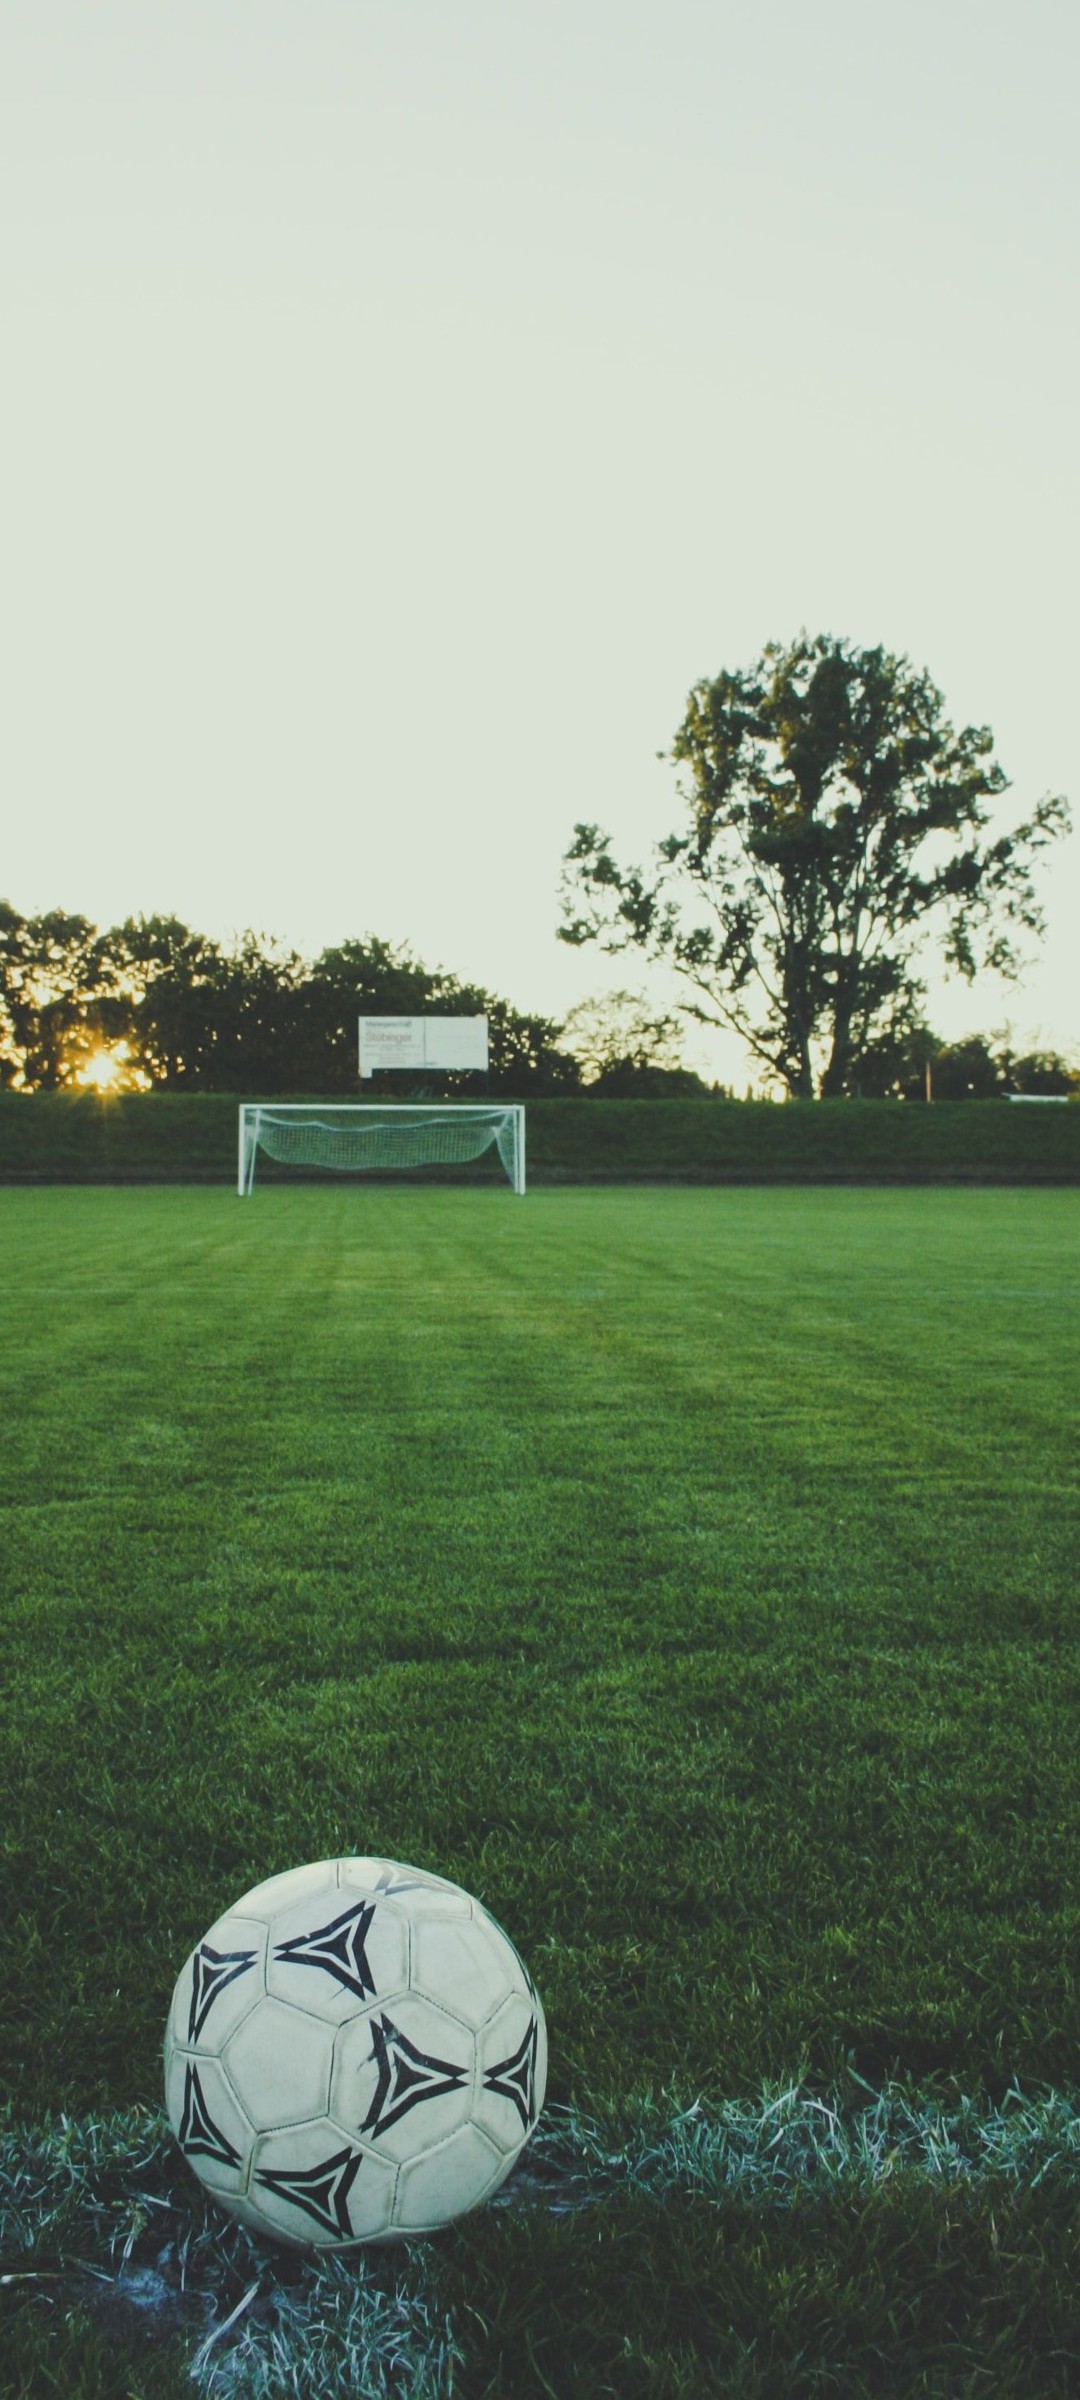 サッカーボールとゴールと芝生 Galaxy S21 5g Androidスマホ壁紙 待ち受け スマラン